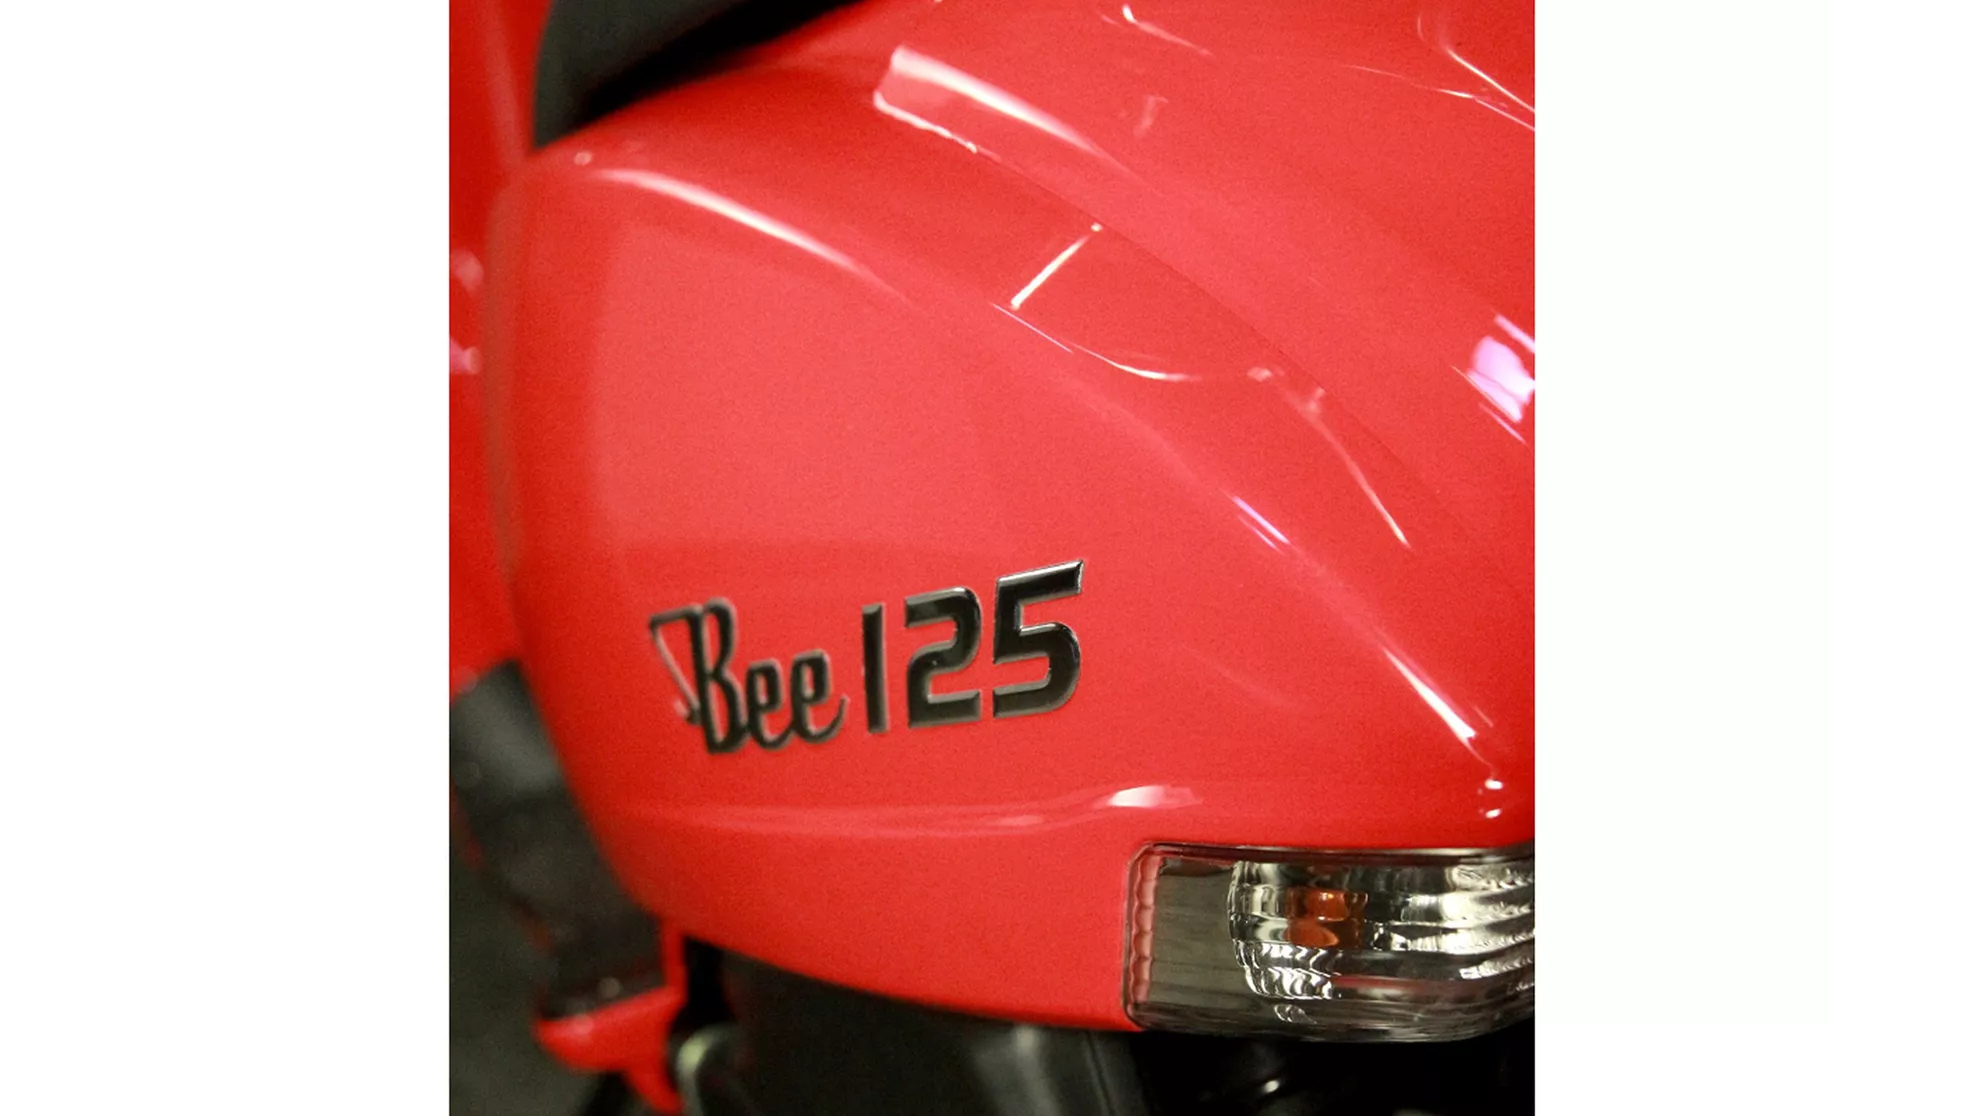 Sachs Bee 125 - Imagen 3